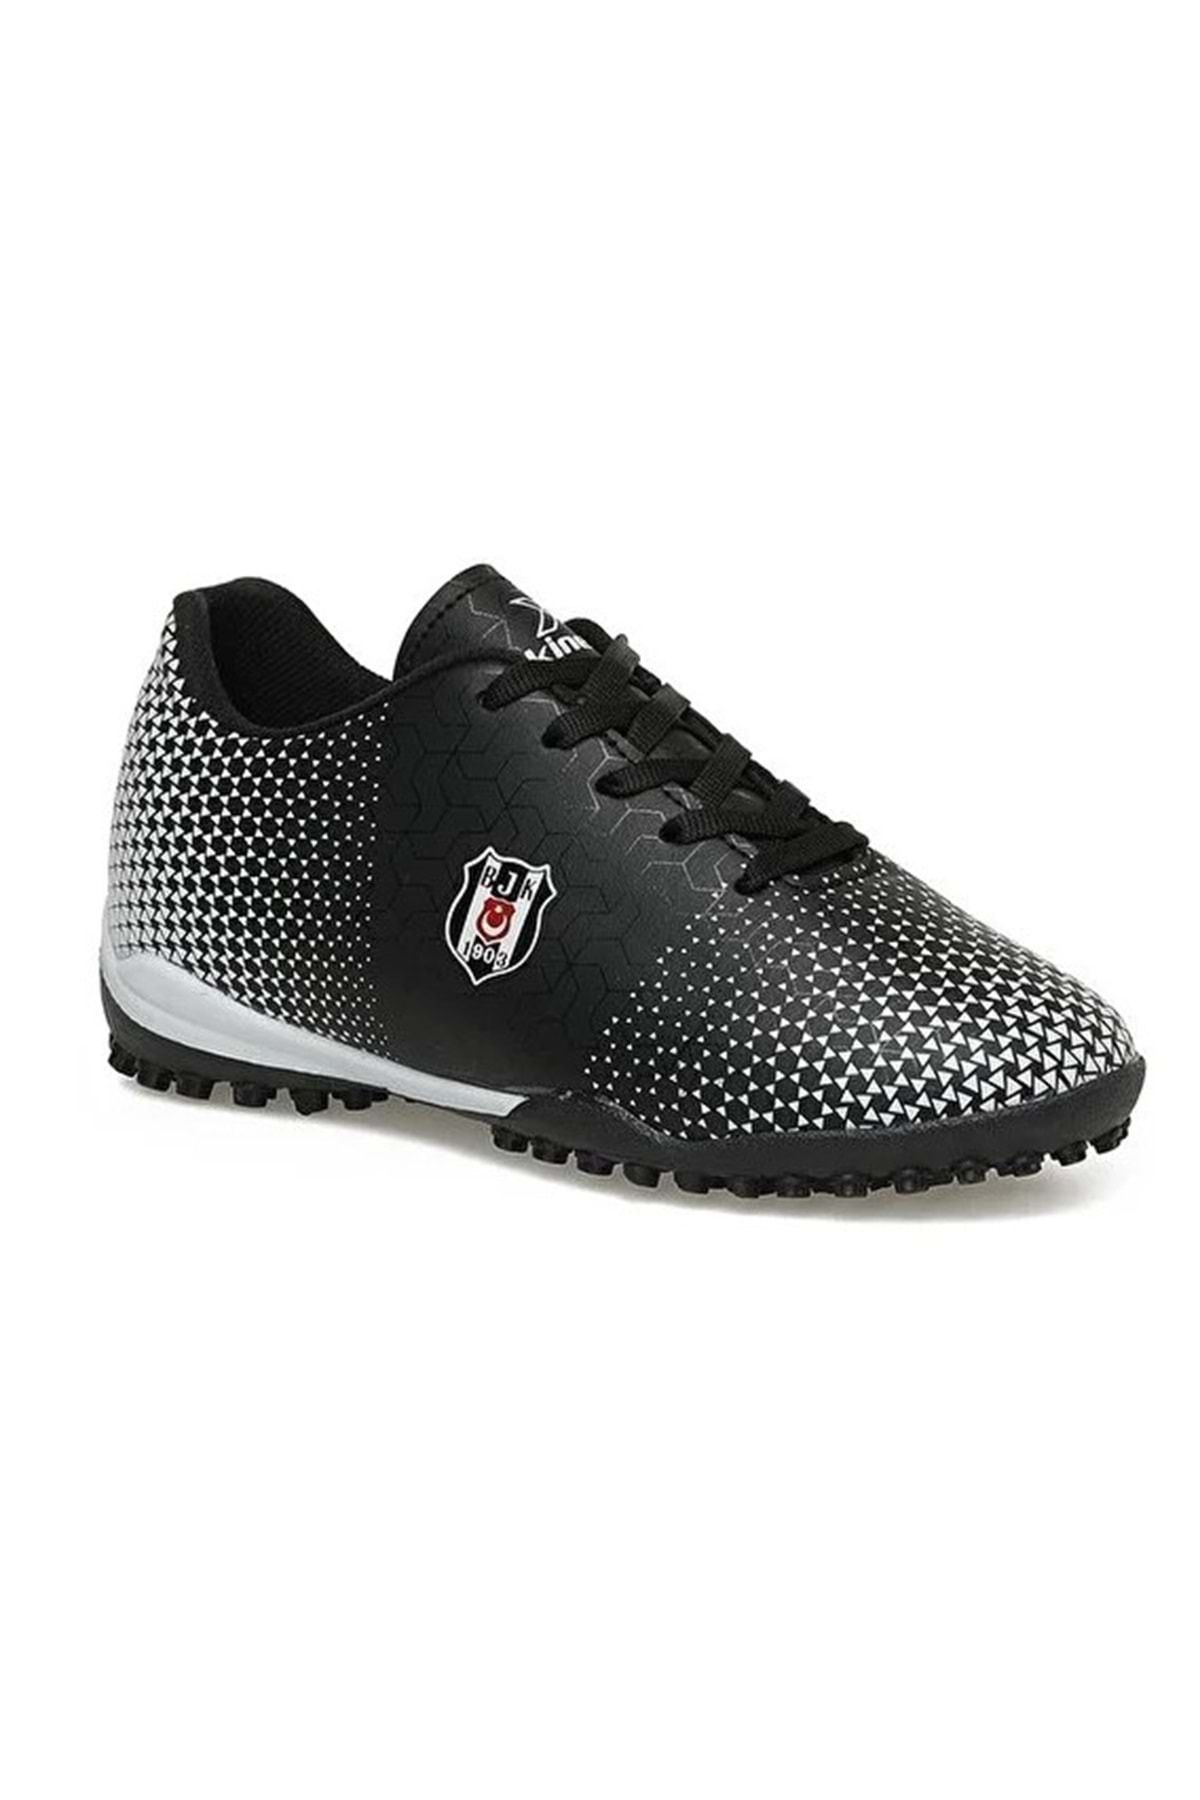 Beşiktaş Kinetix Baros J Bjk Tf Çocuk Halısaha Ayakkabısı Siyah-beyaz